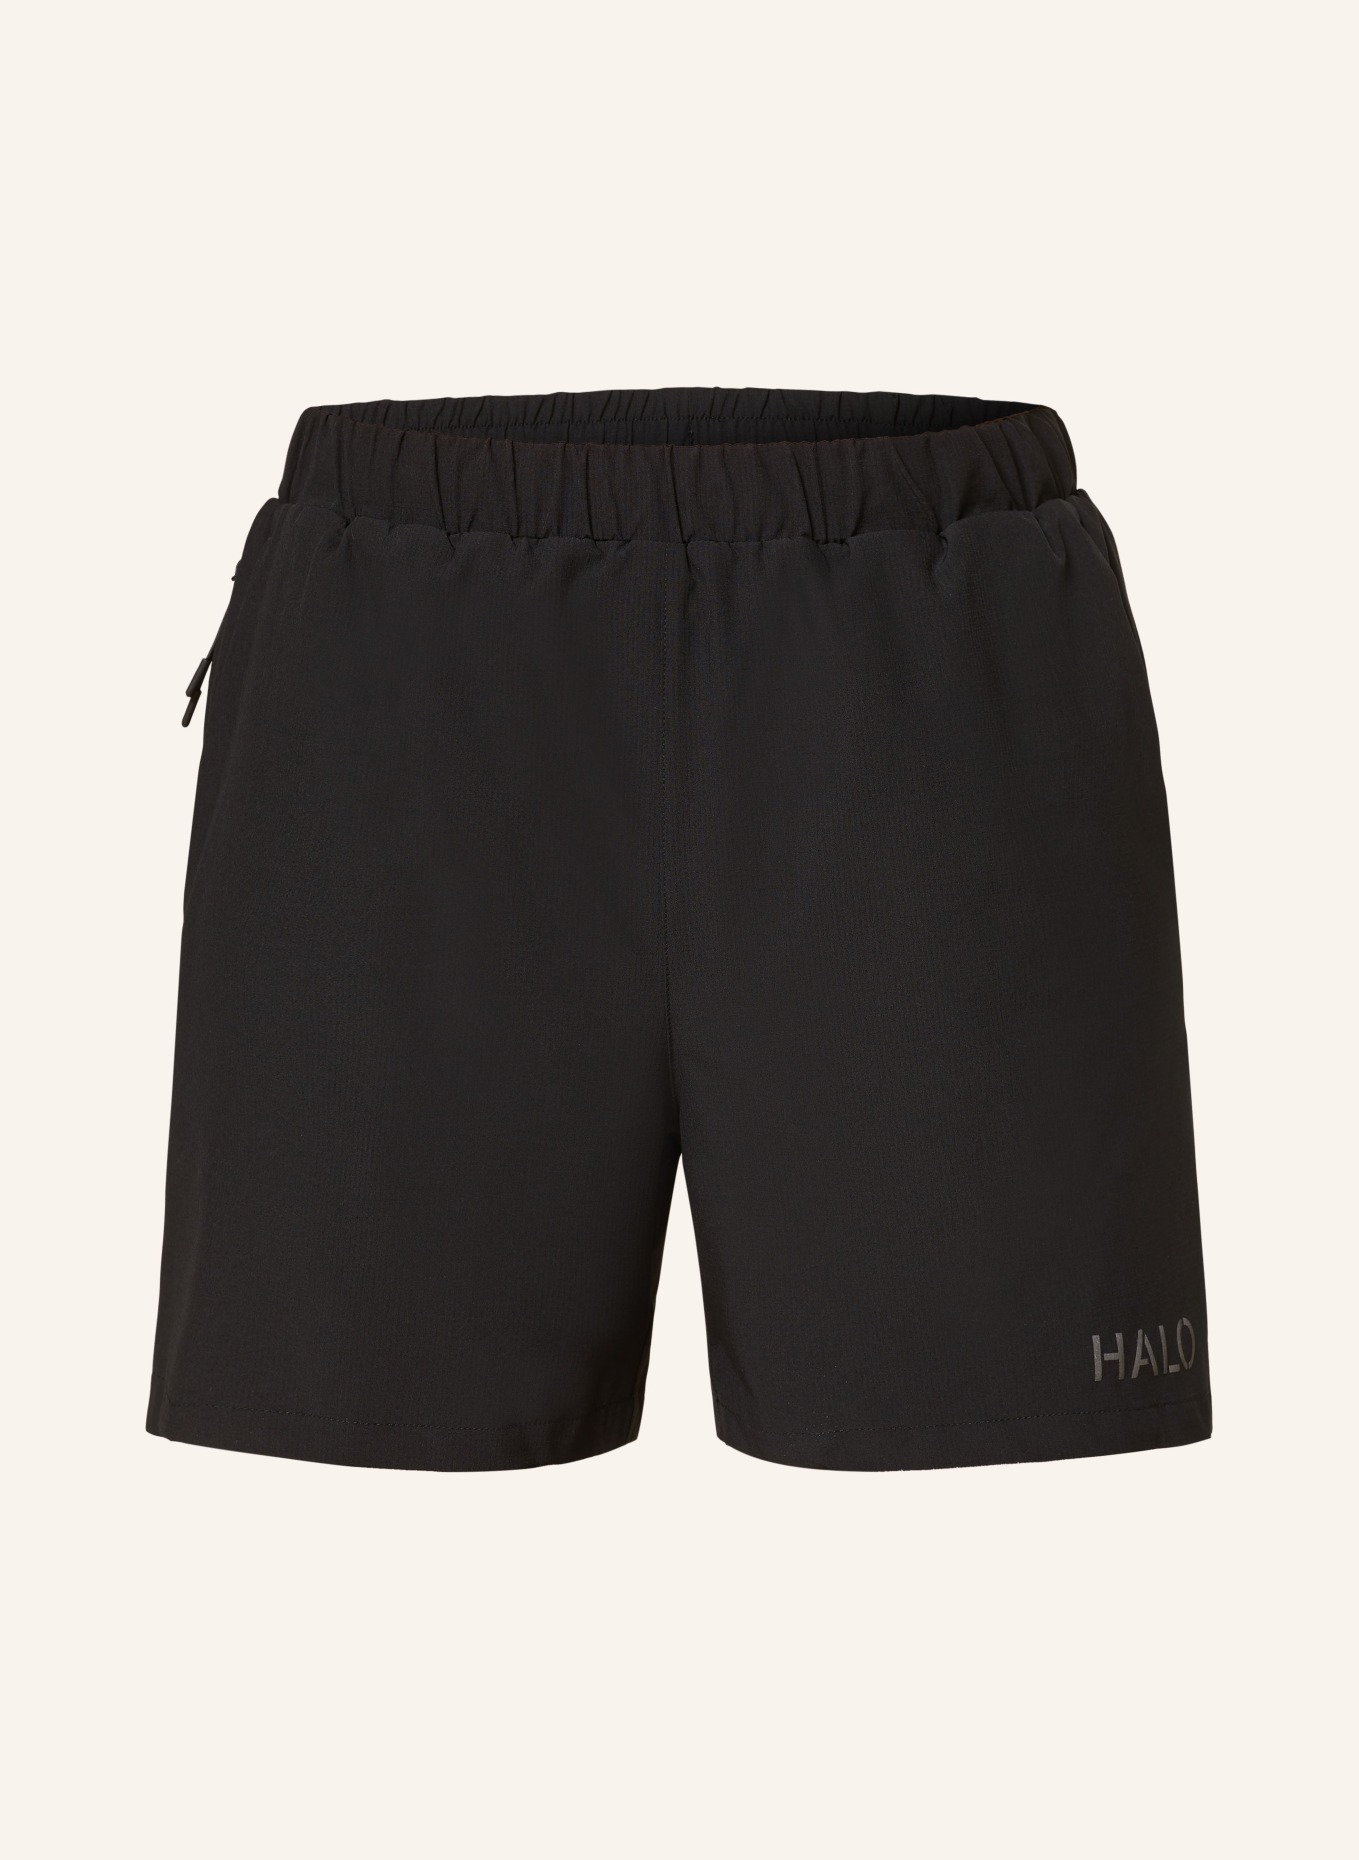 HALO Shorts TECH, Farbe: SCHWARZ (Bild 1)